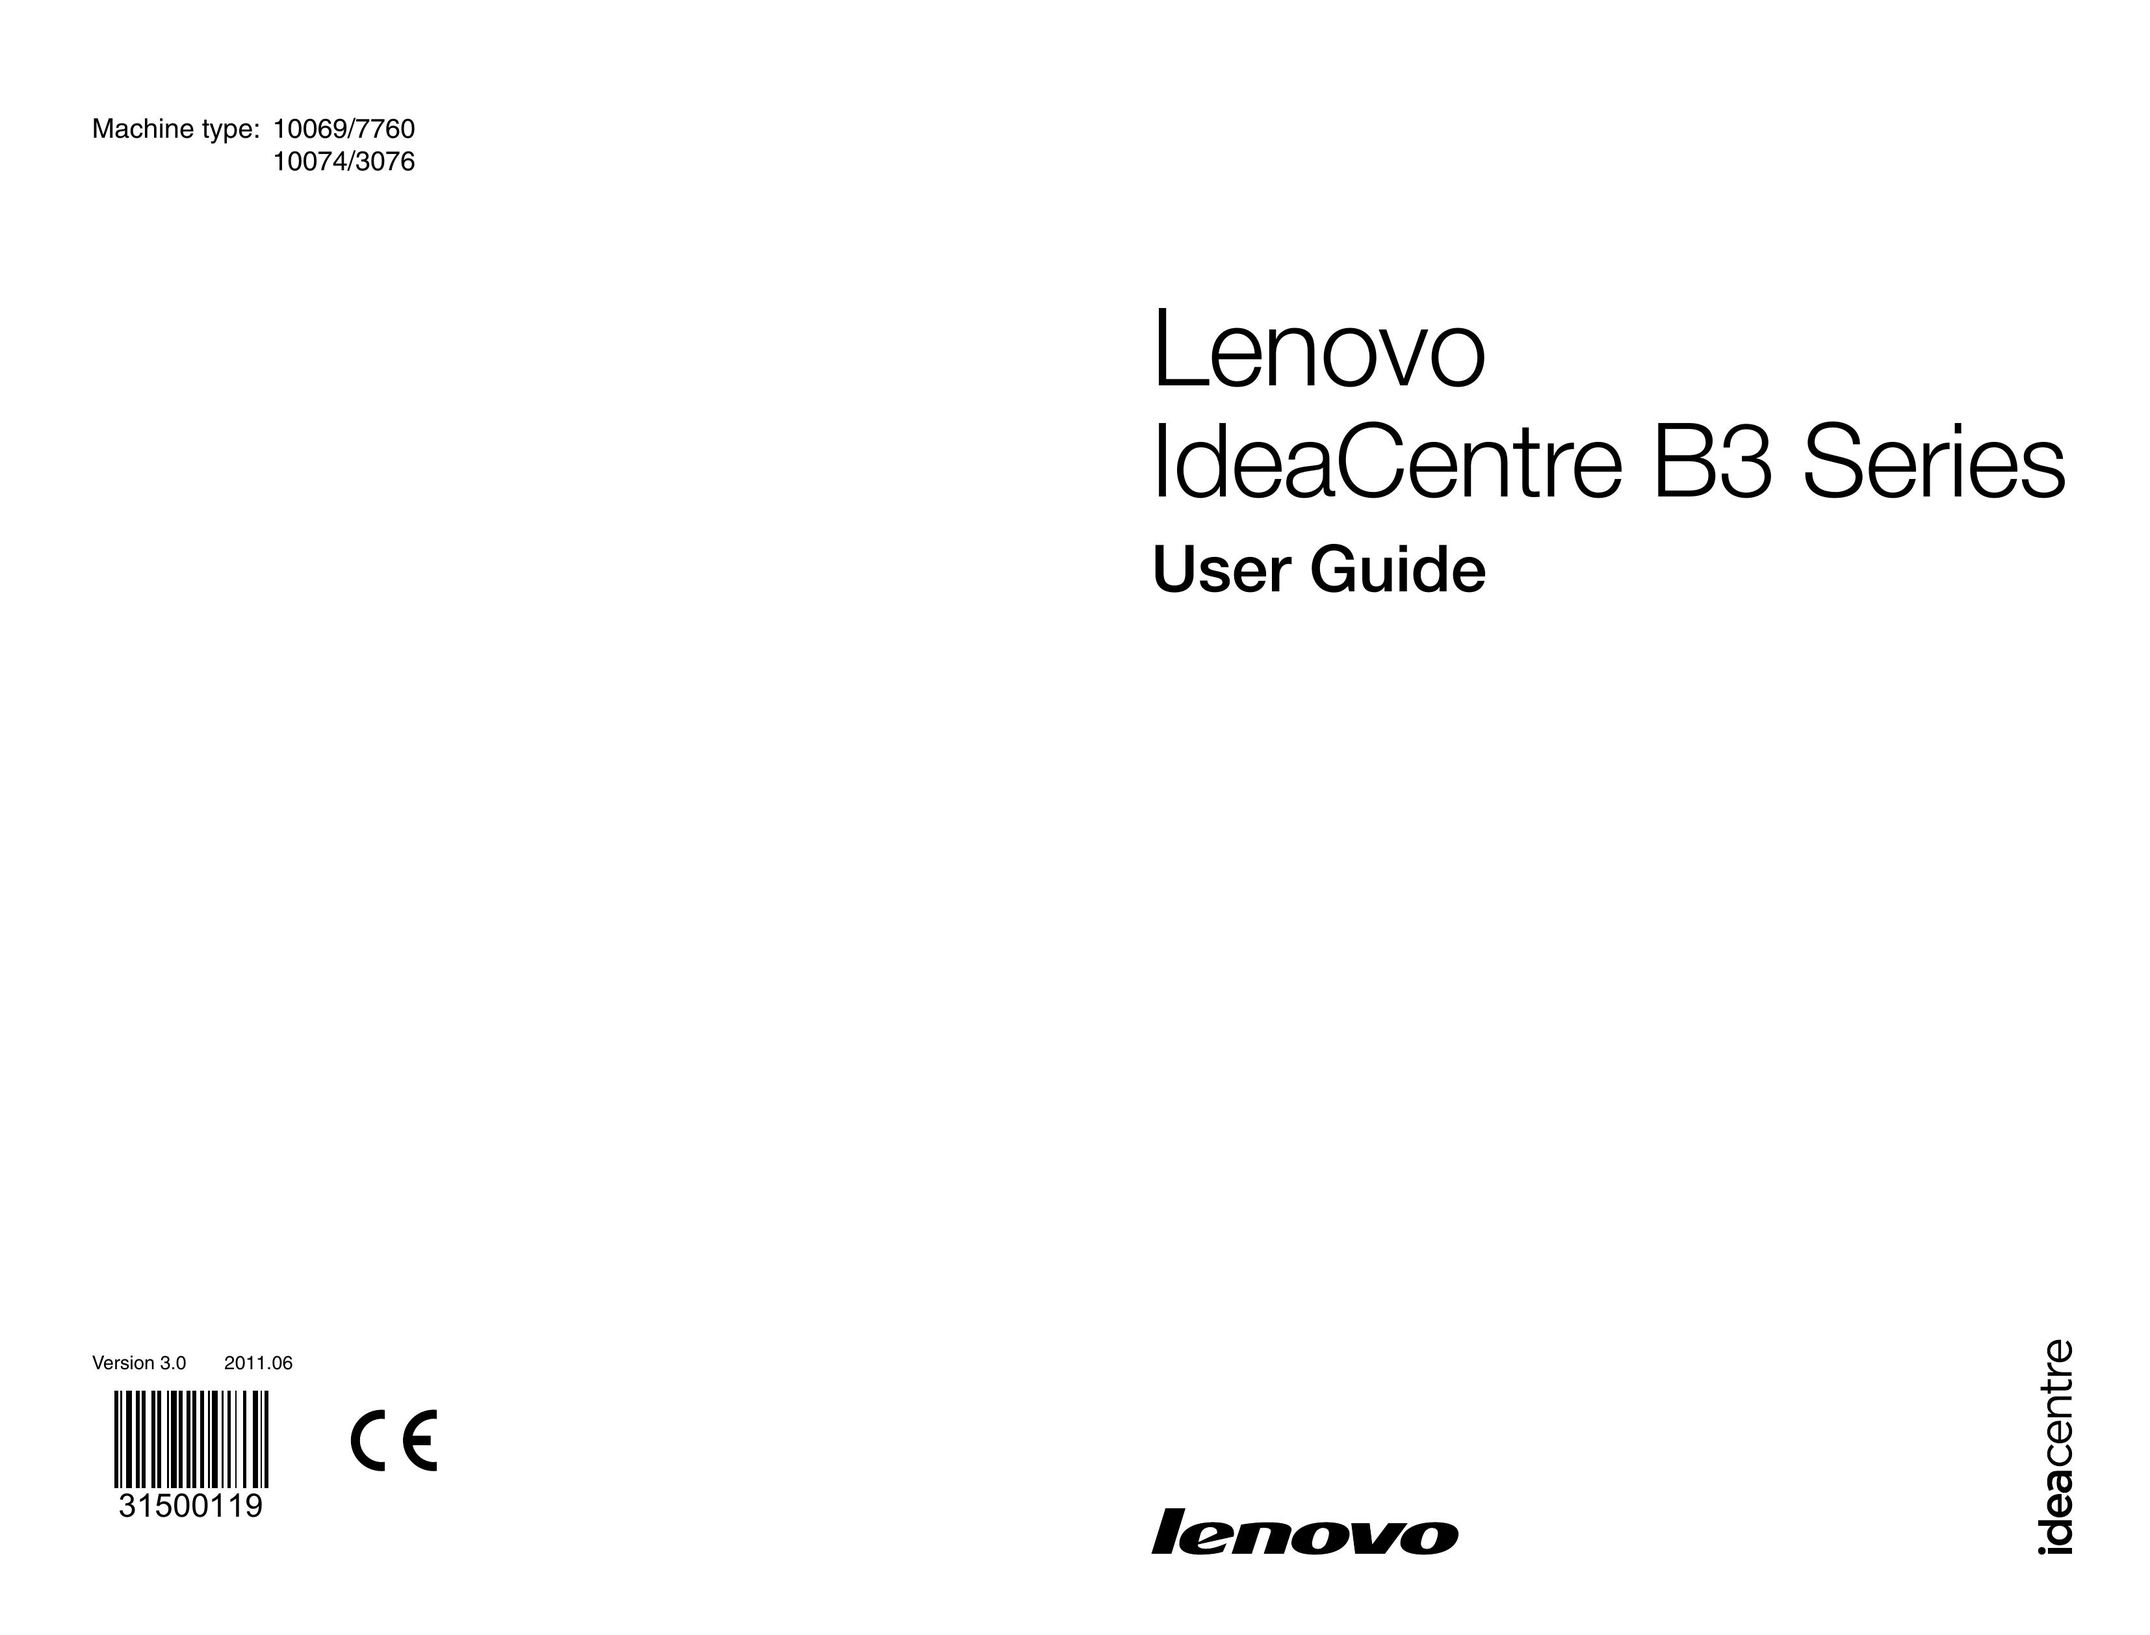 Lenovo 10074/3076 Laptop User Manual